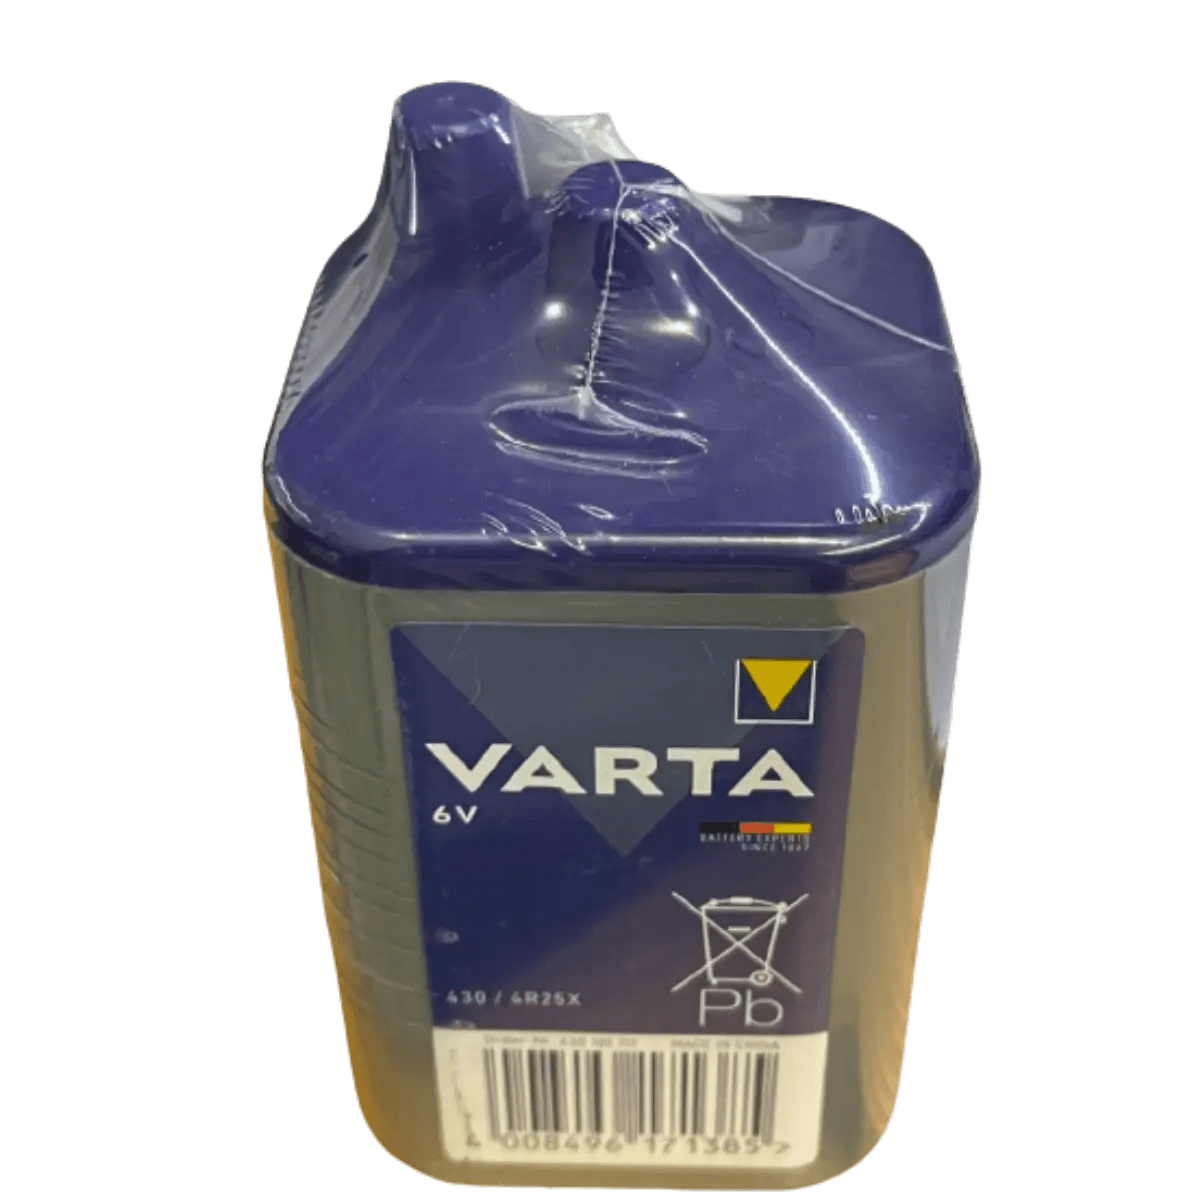 Battery 6V 4R25 Varta saline - Vlad